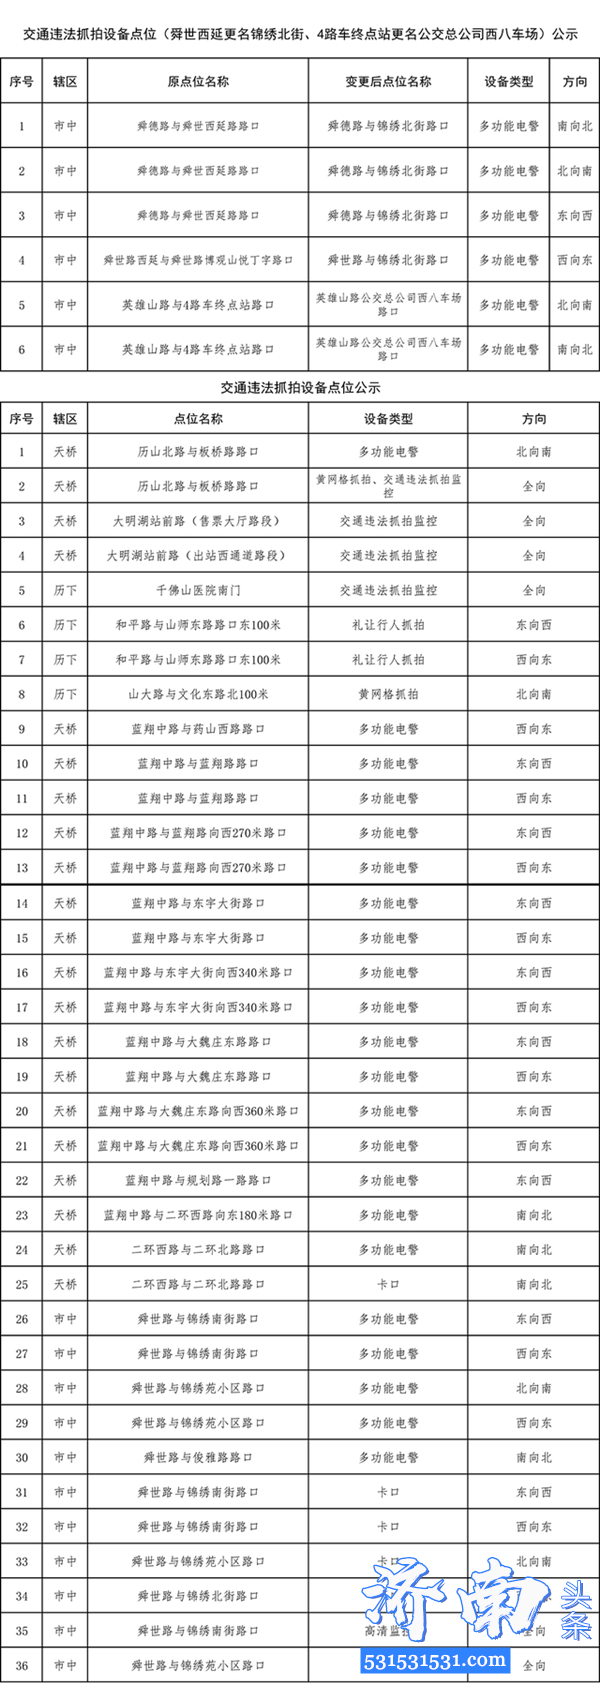 济南市公安局官方网站：交通违法抓拍点涉及6处名称变更以及新增交通违法抓拍点